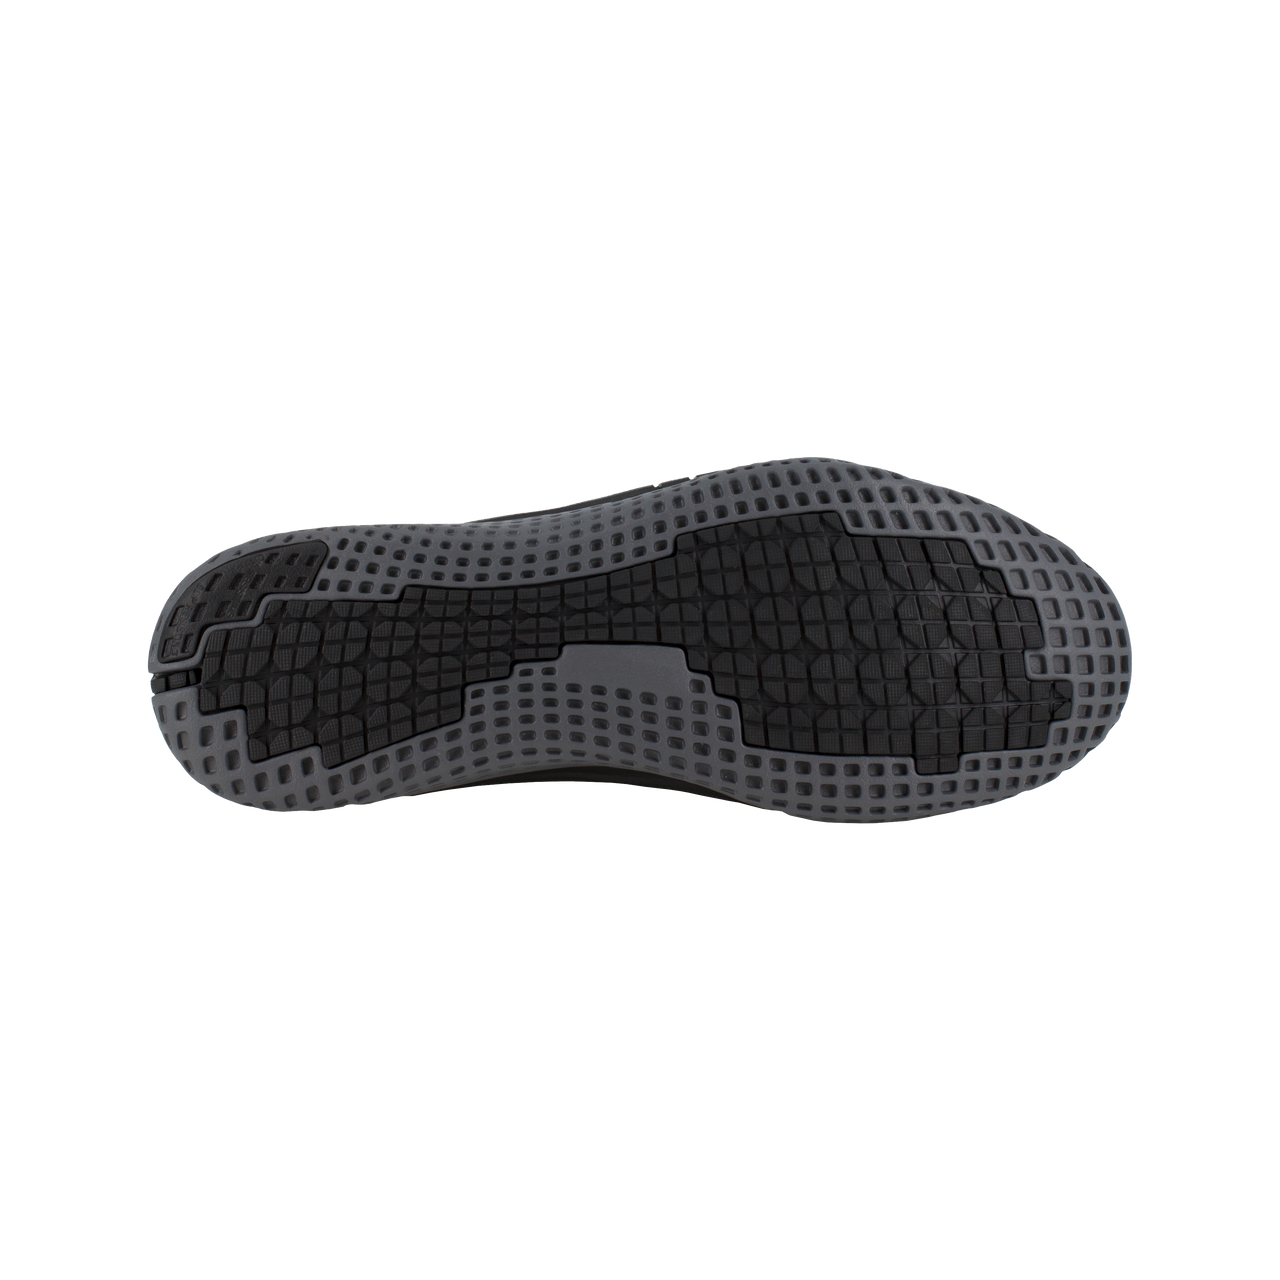 RB251 Reebok Mesh Sneaker Steel Toe (Black and Dark Grey)